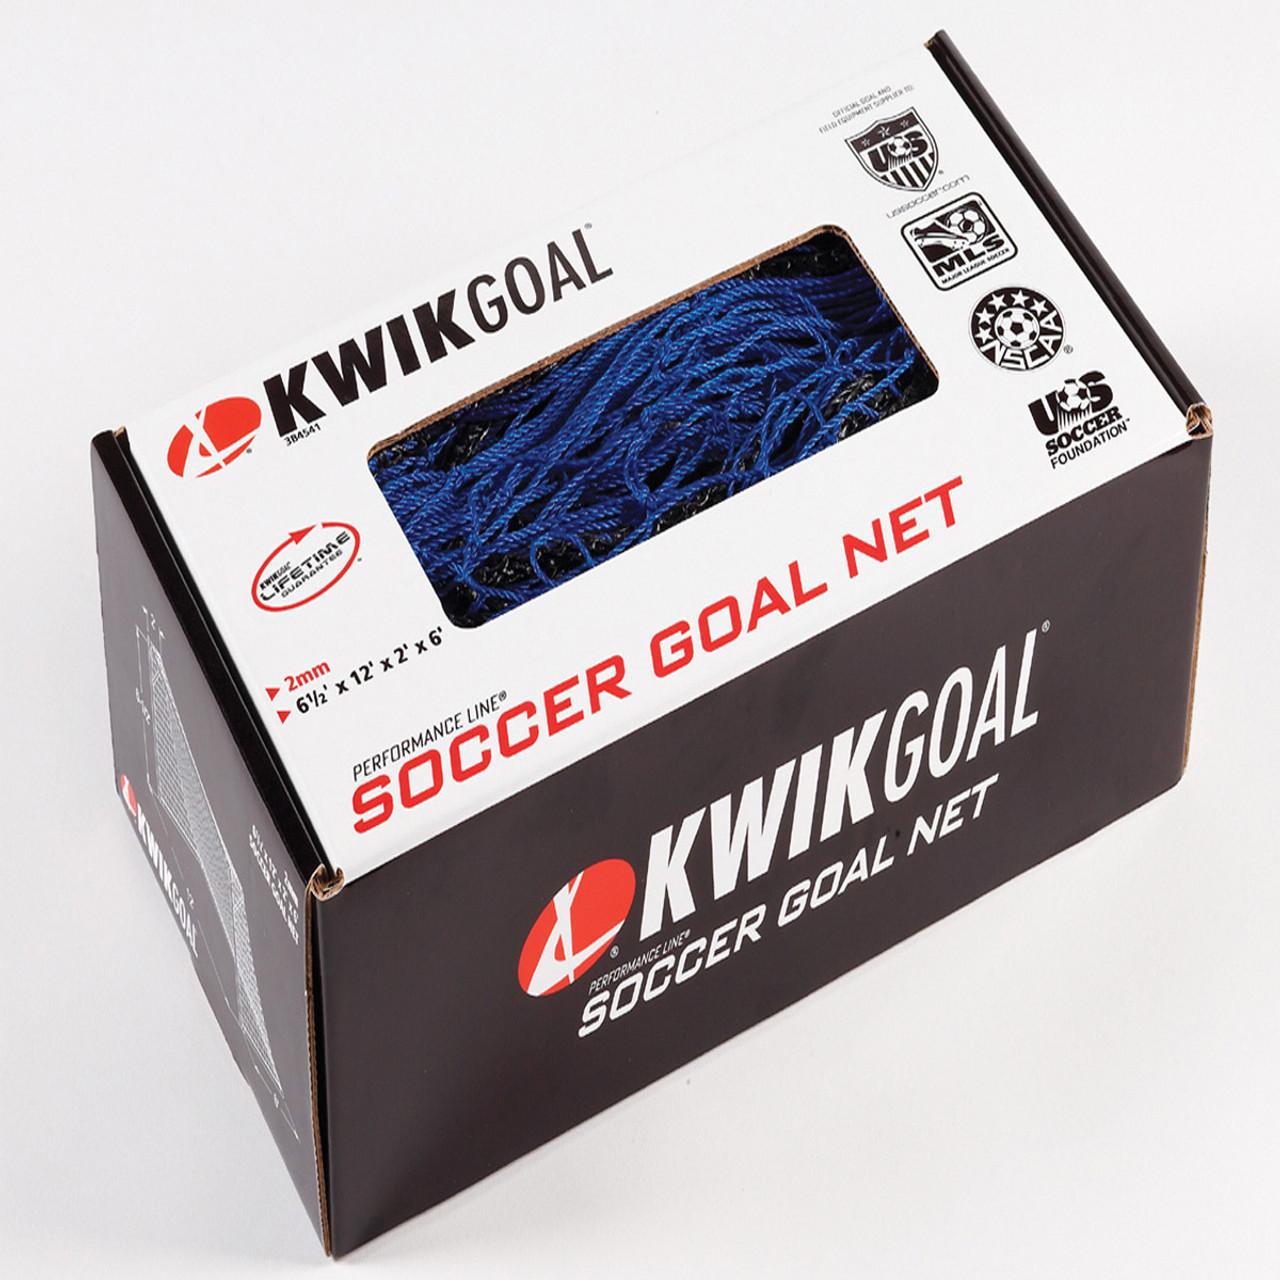 Kwik Goal 5H X 10W X 0D X 5B 120MM Mesh 2MM Solid Braid Knotless Soccer Net